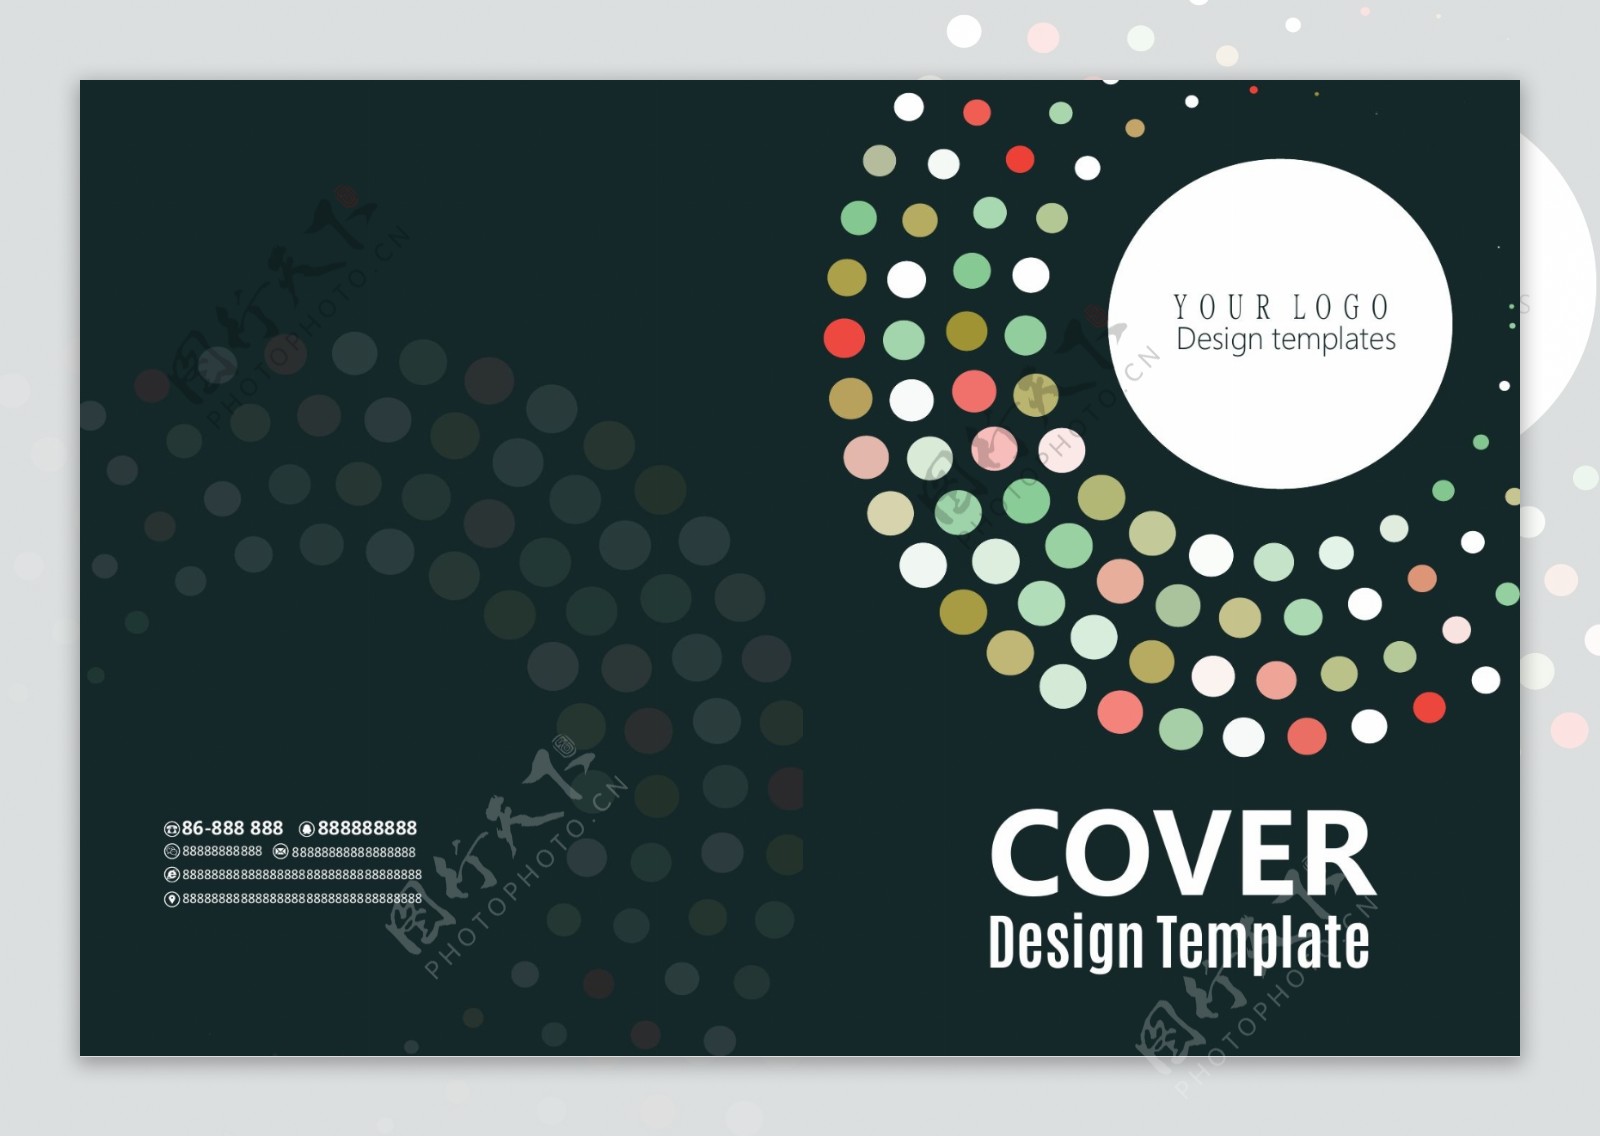 黑色圆圈企业品牌宣传画册封面设计